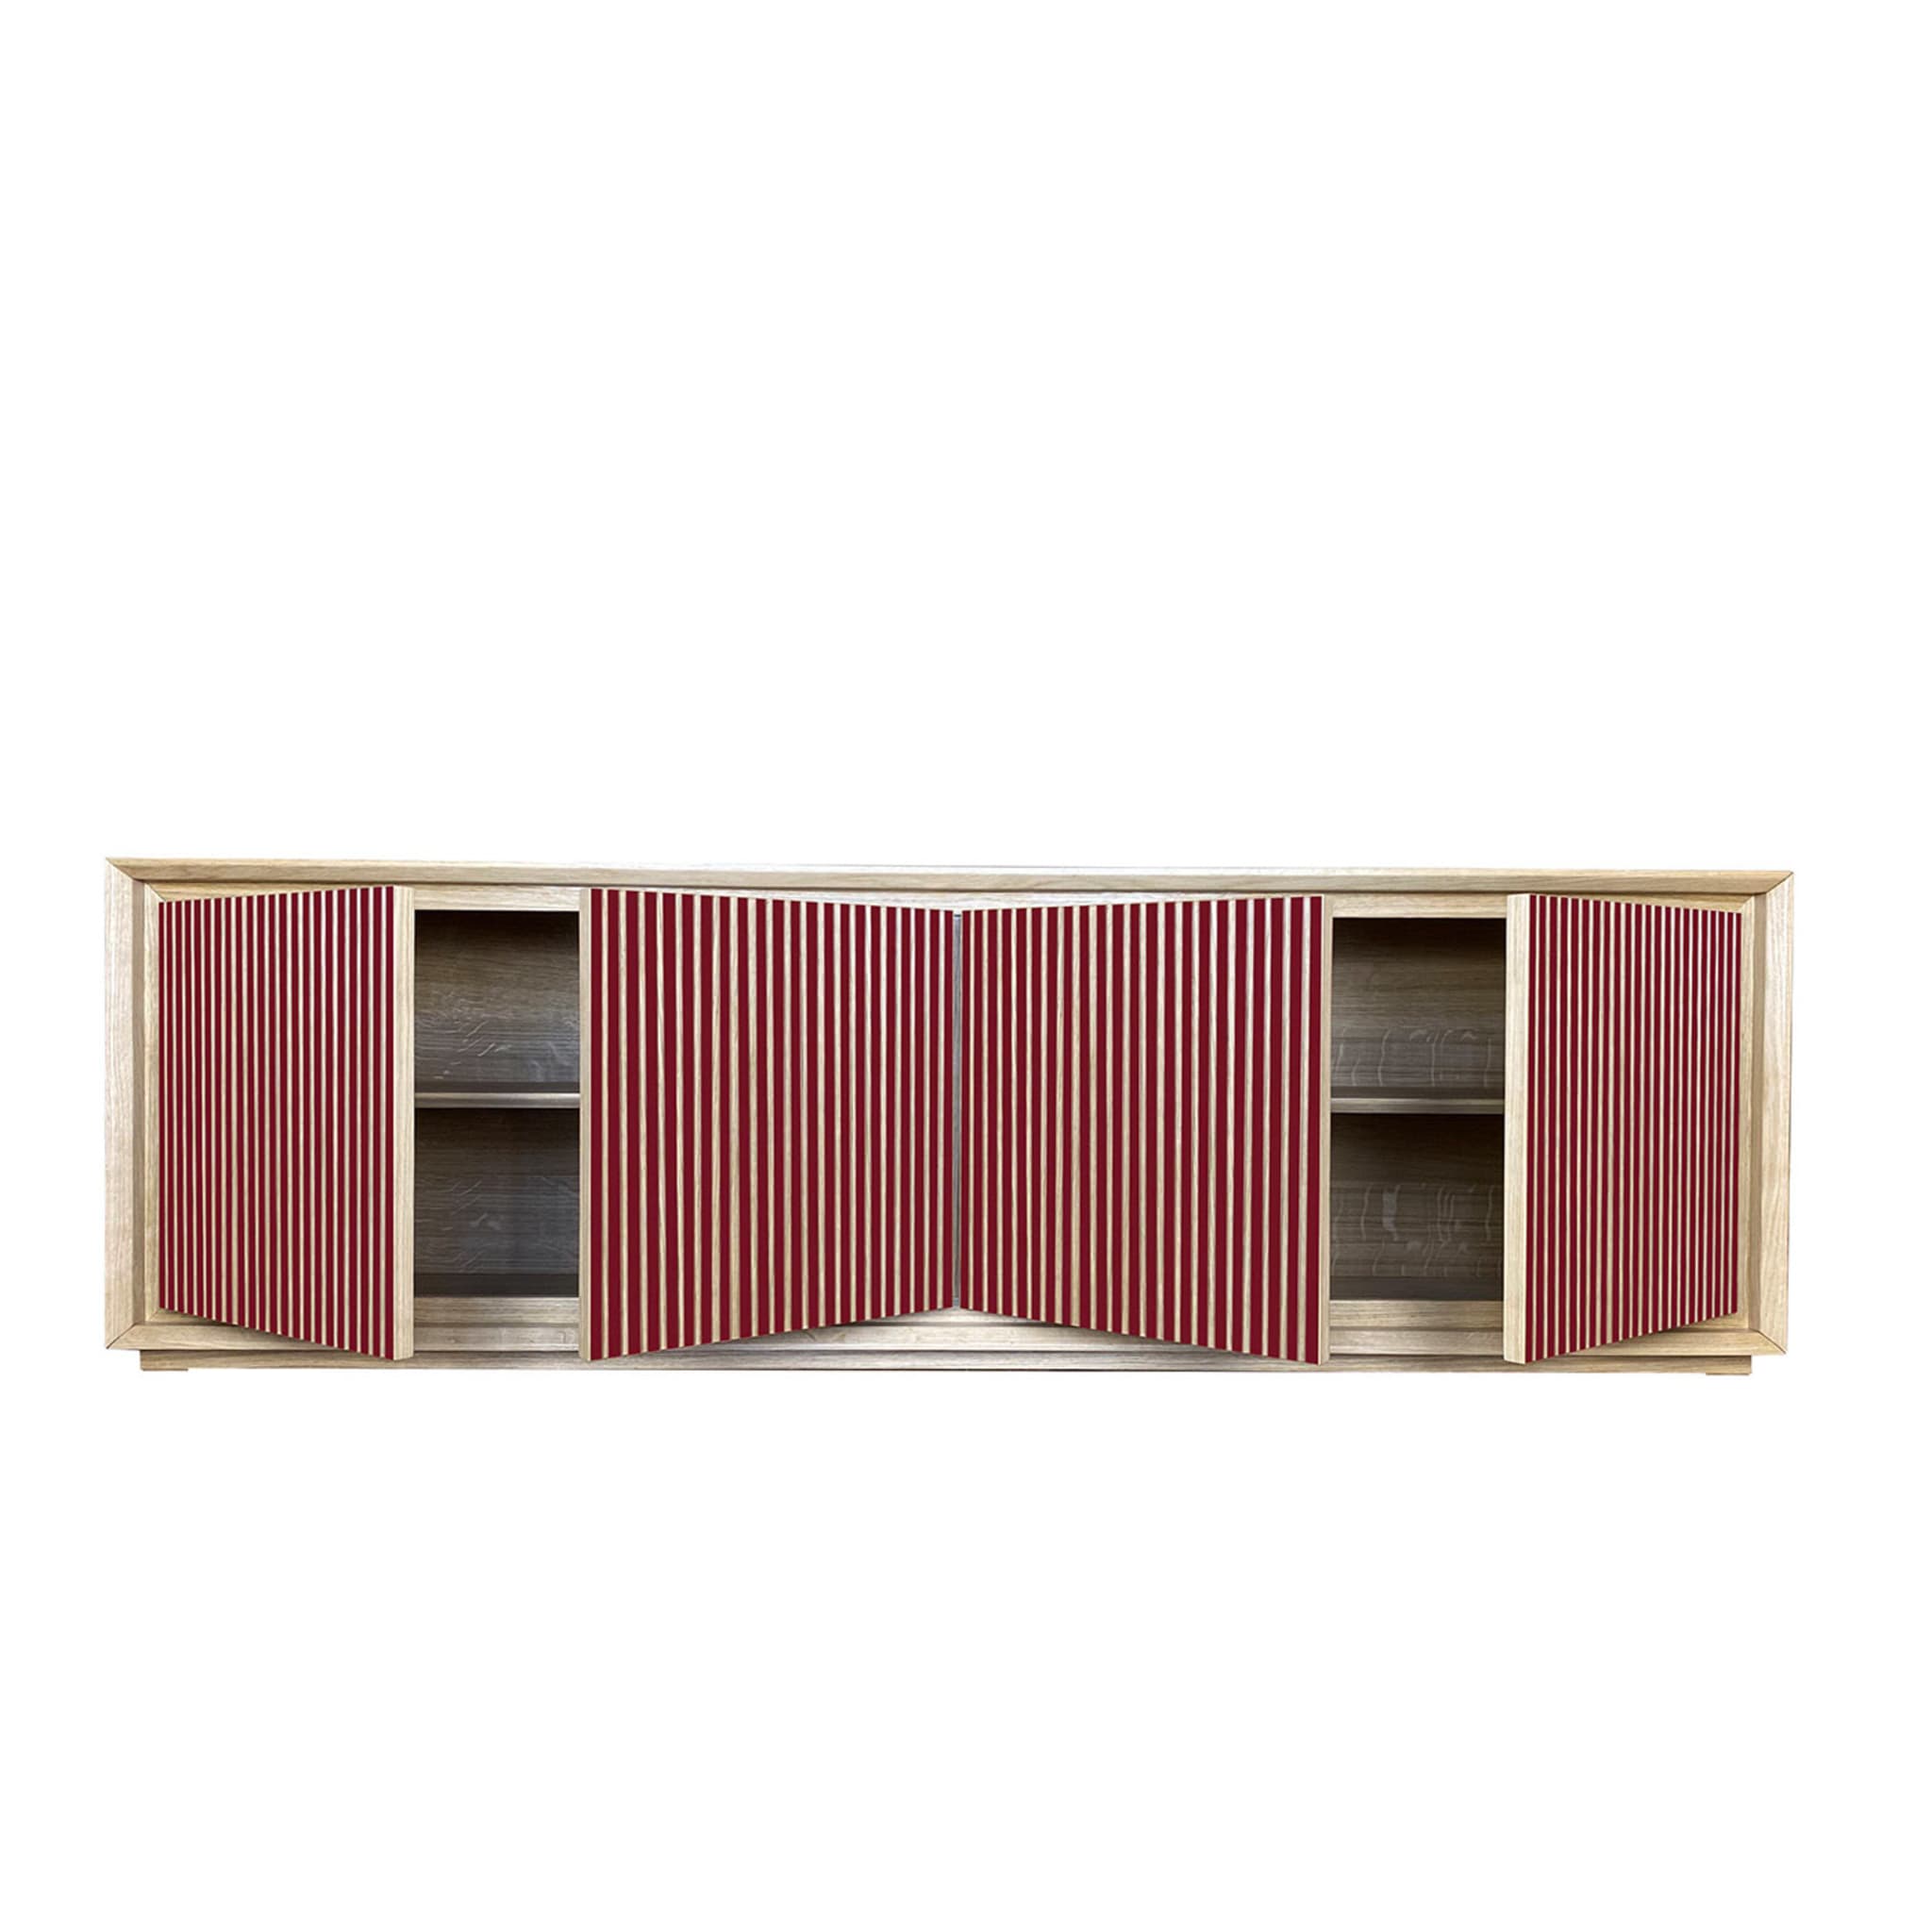 Fuga Rubino 4-Door Grooved Ruby Sideboard by Mascia Meccani - Alternative view 3